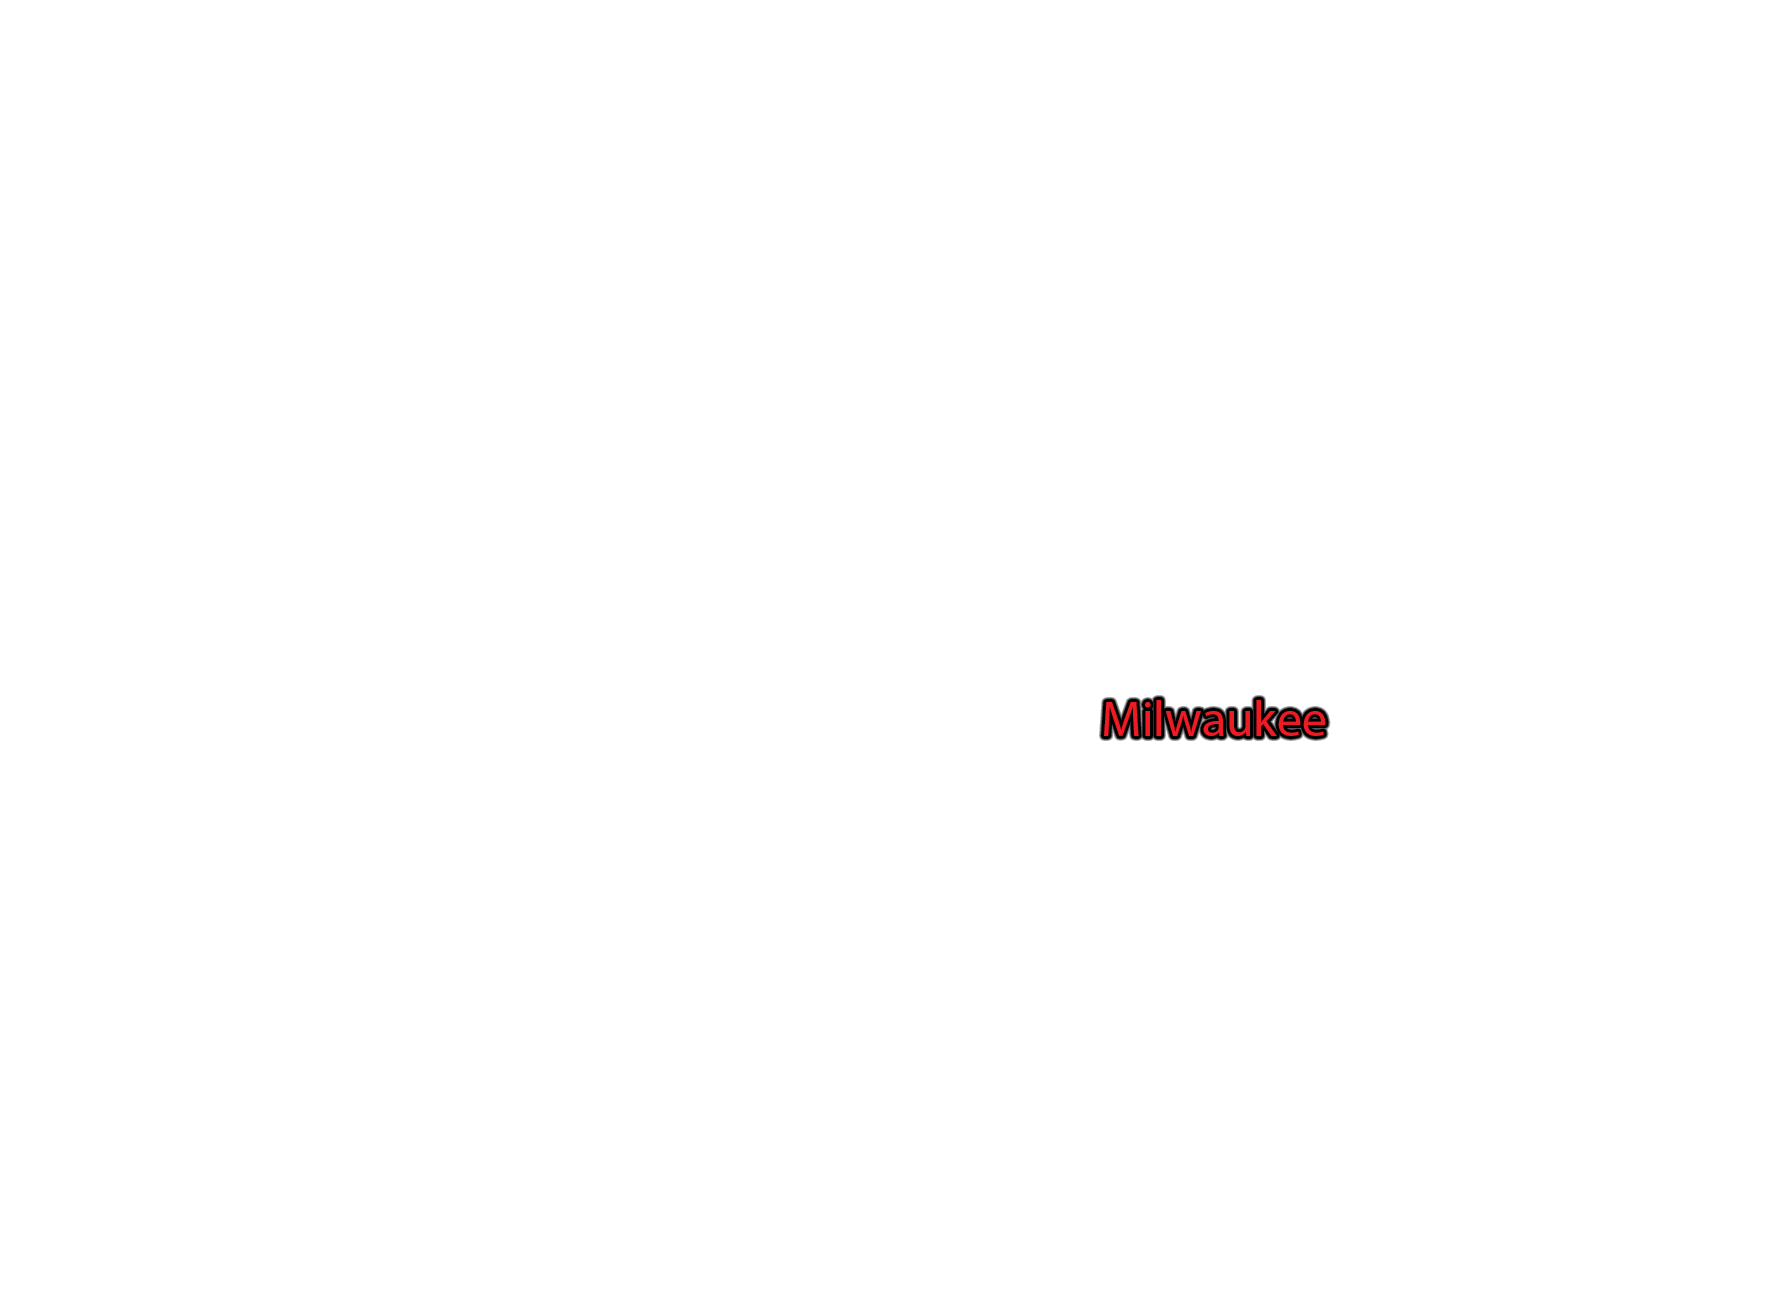 Milwaukee label with glow